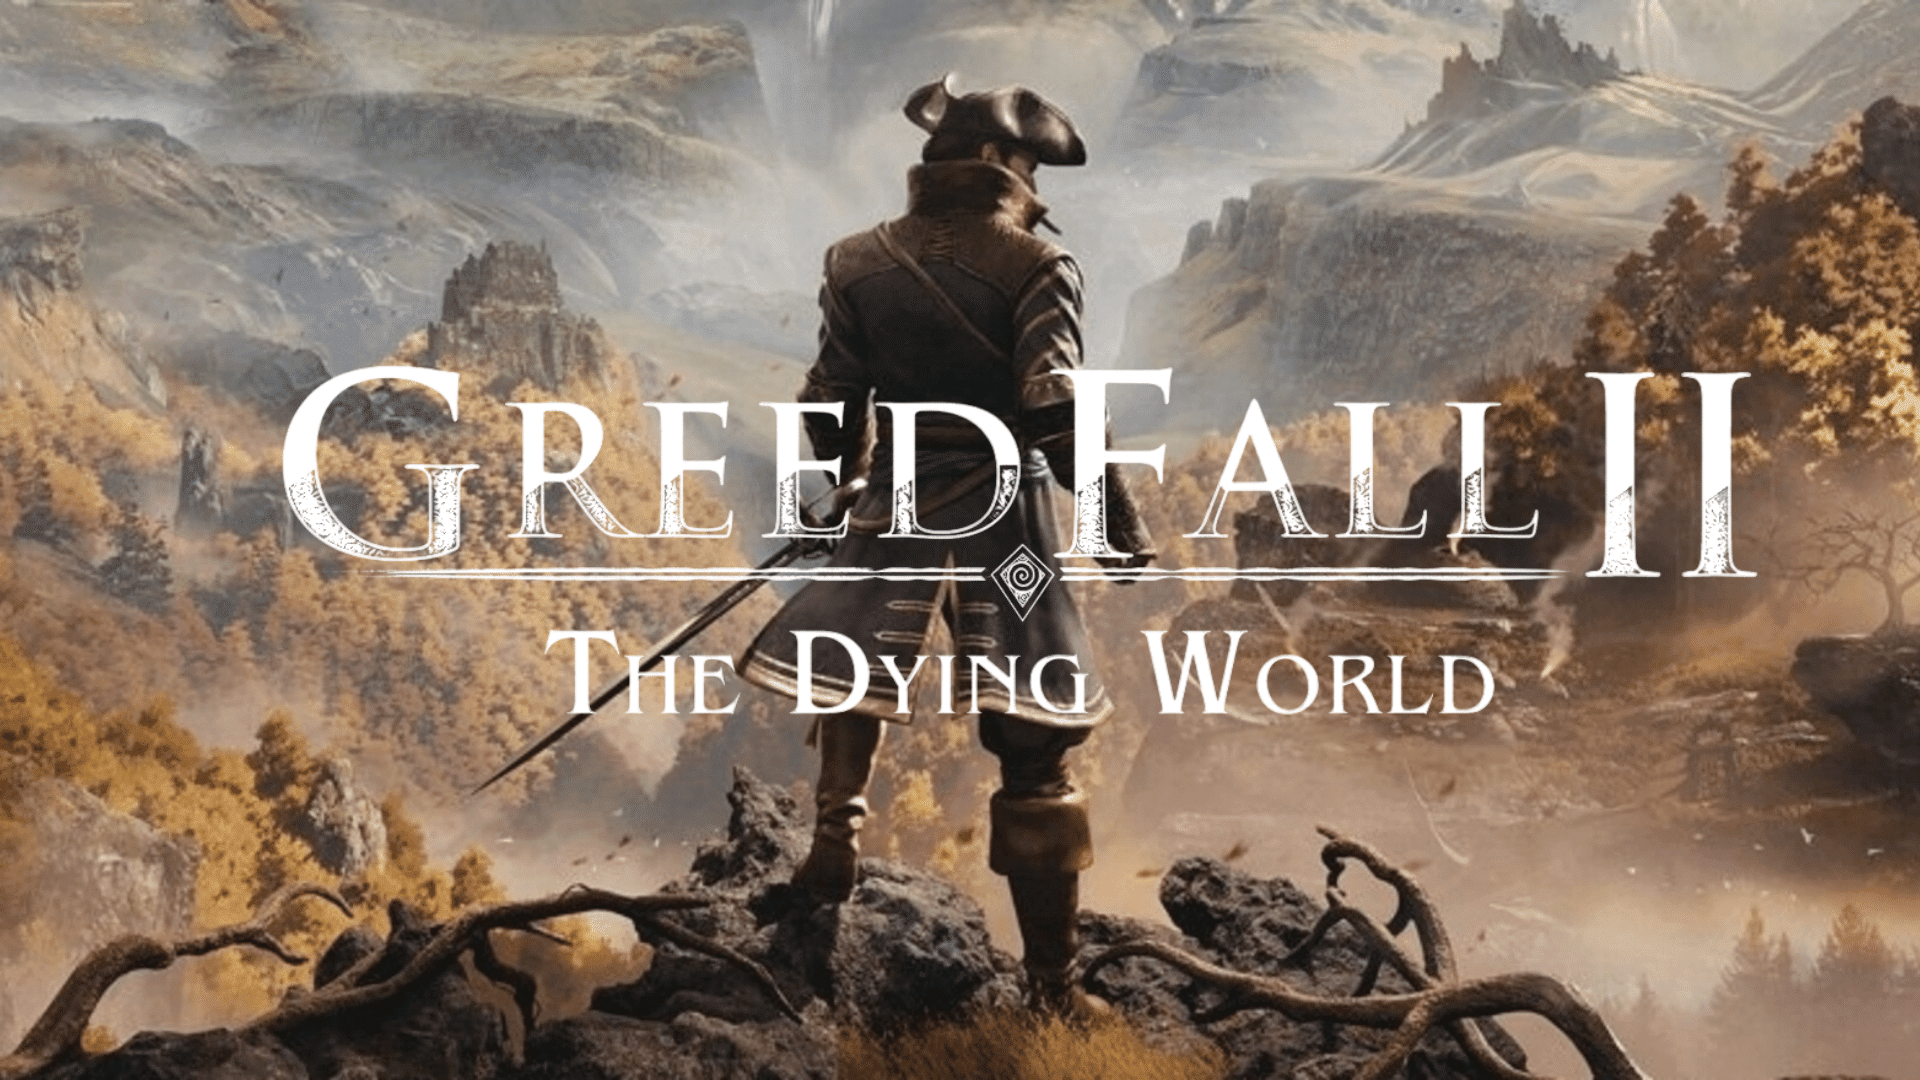 Utviklerne av GreedFall 2: The Dying World har avslørt nye detaljer om spillet: "flere romantiske muligheter" og potensielle cameos fra den forrige delen av spillet.